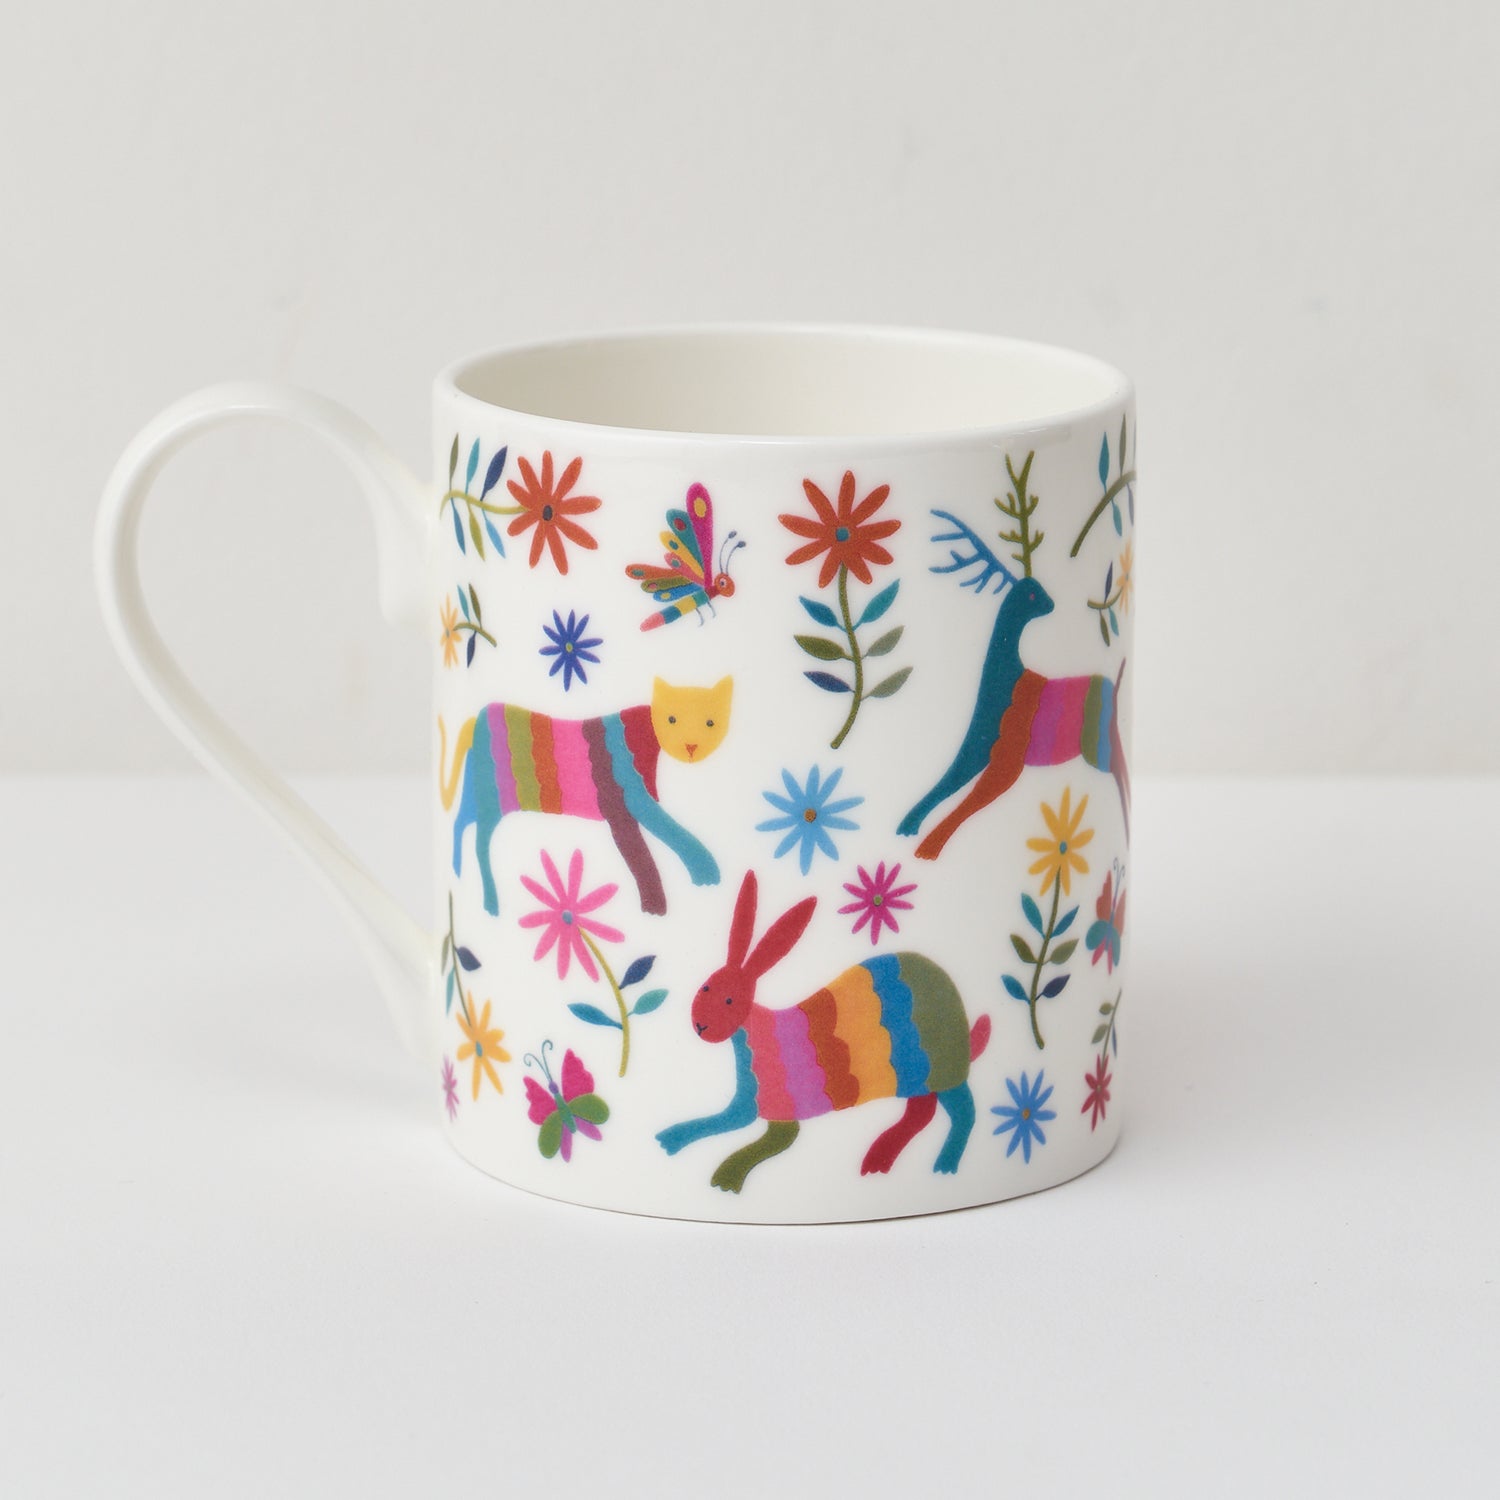 Otomi Animals Mug by Mary Kilvert